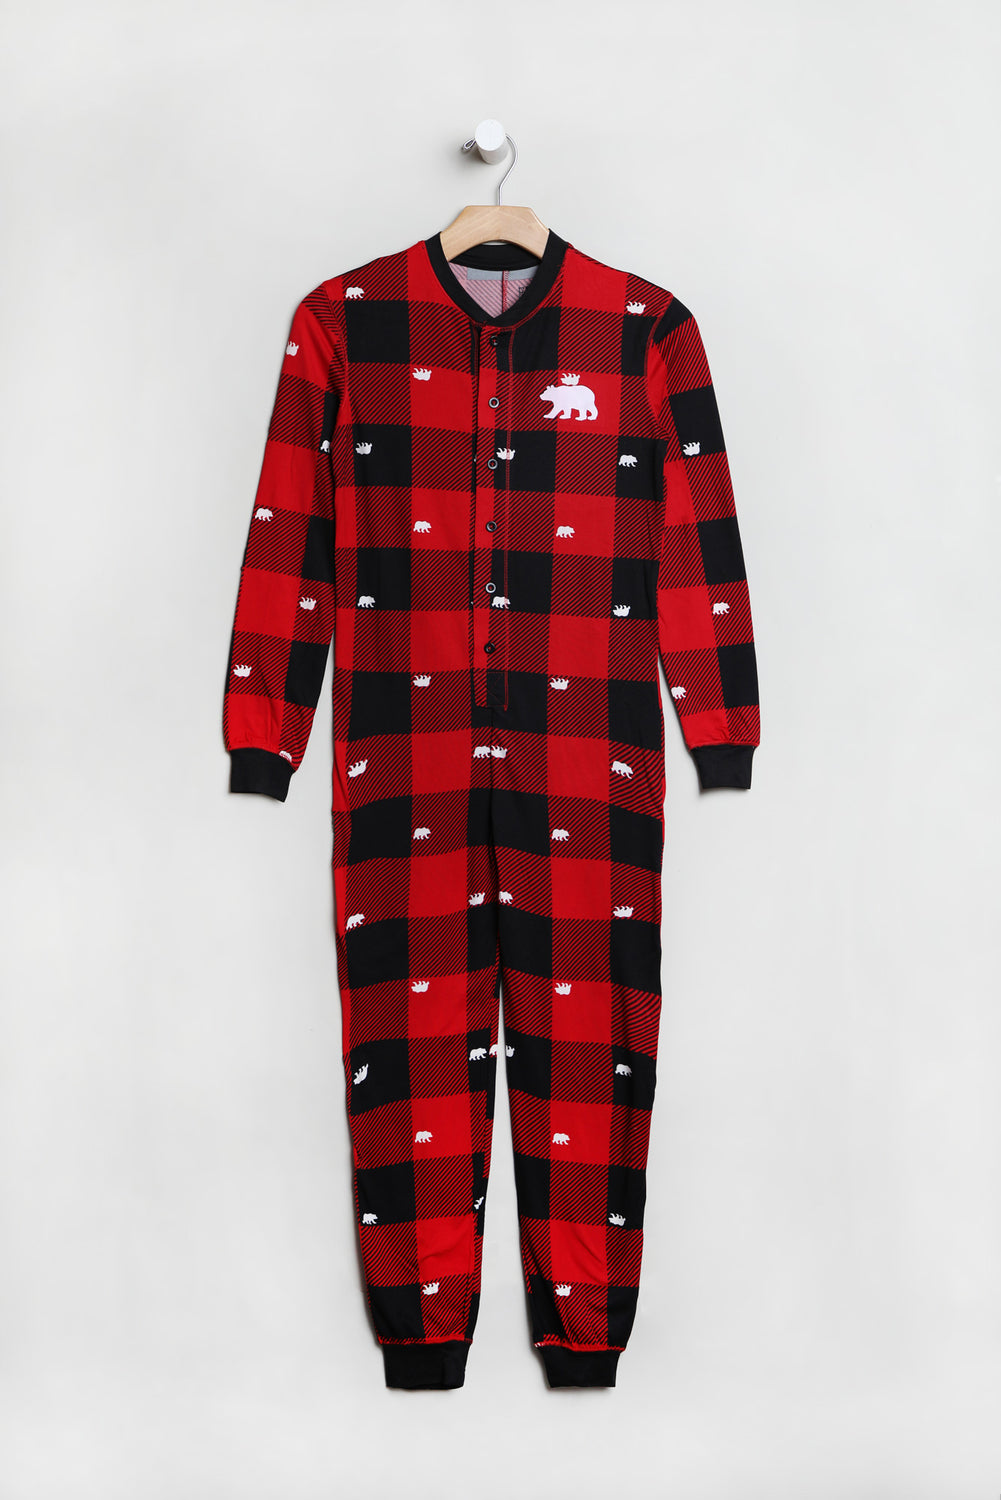 Combinaison Pyjama de Famille Imprimé Oursons sur Carreaux Junior Combinaison Pyjama de Famille Imprimé Oursons sur Carreaux Junior